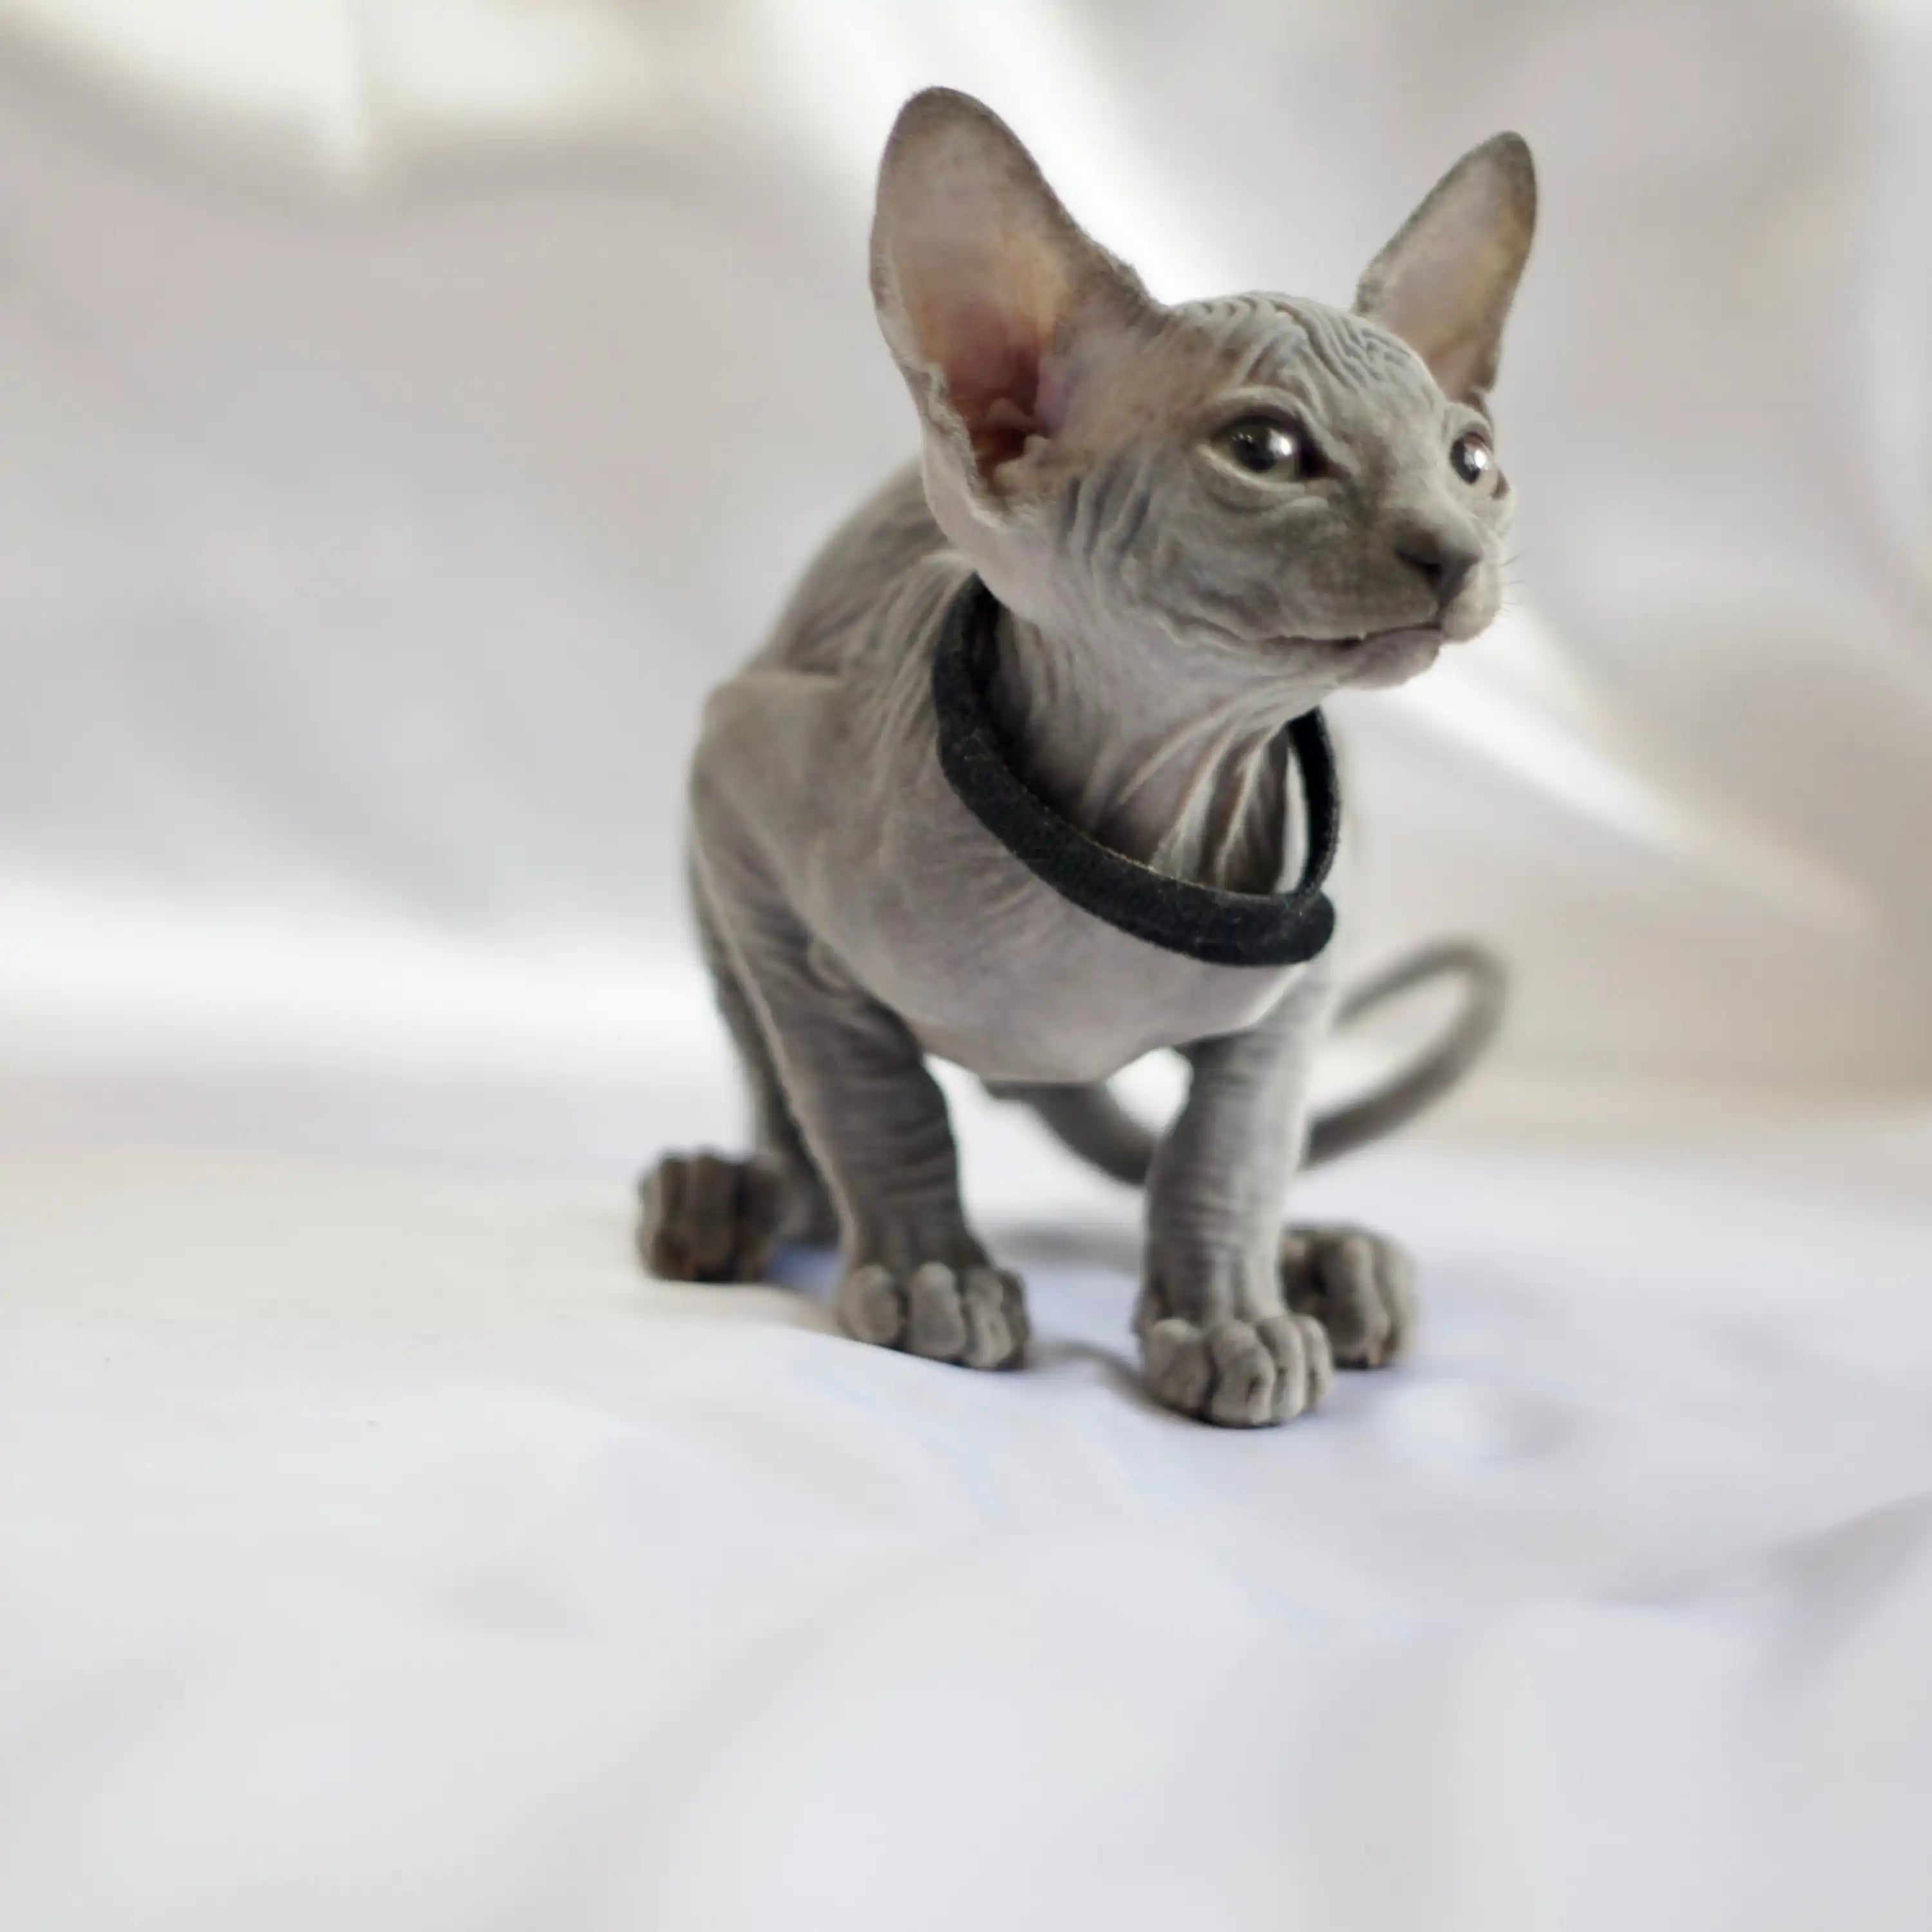 Sphynx Cats for Sale | Kittens For Sheldon | Kitten